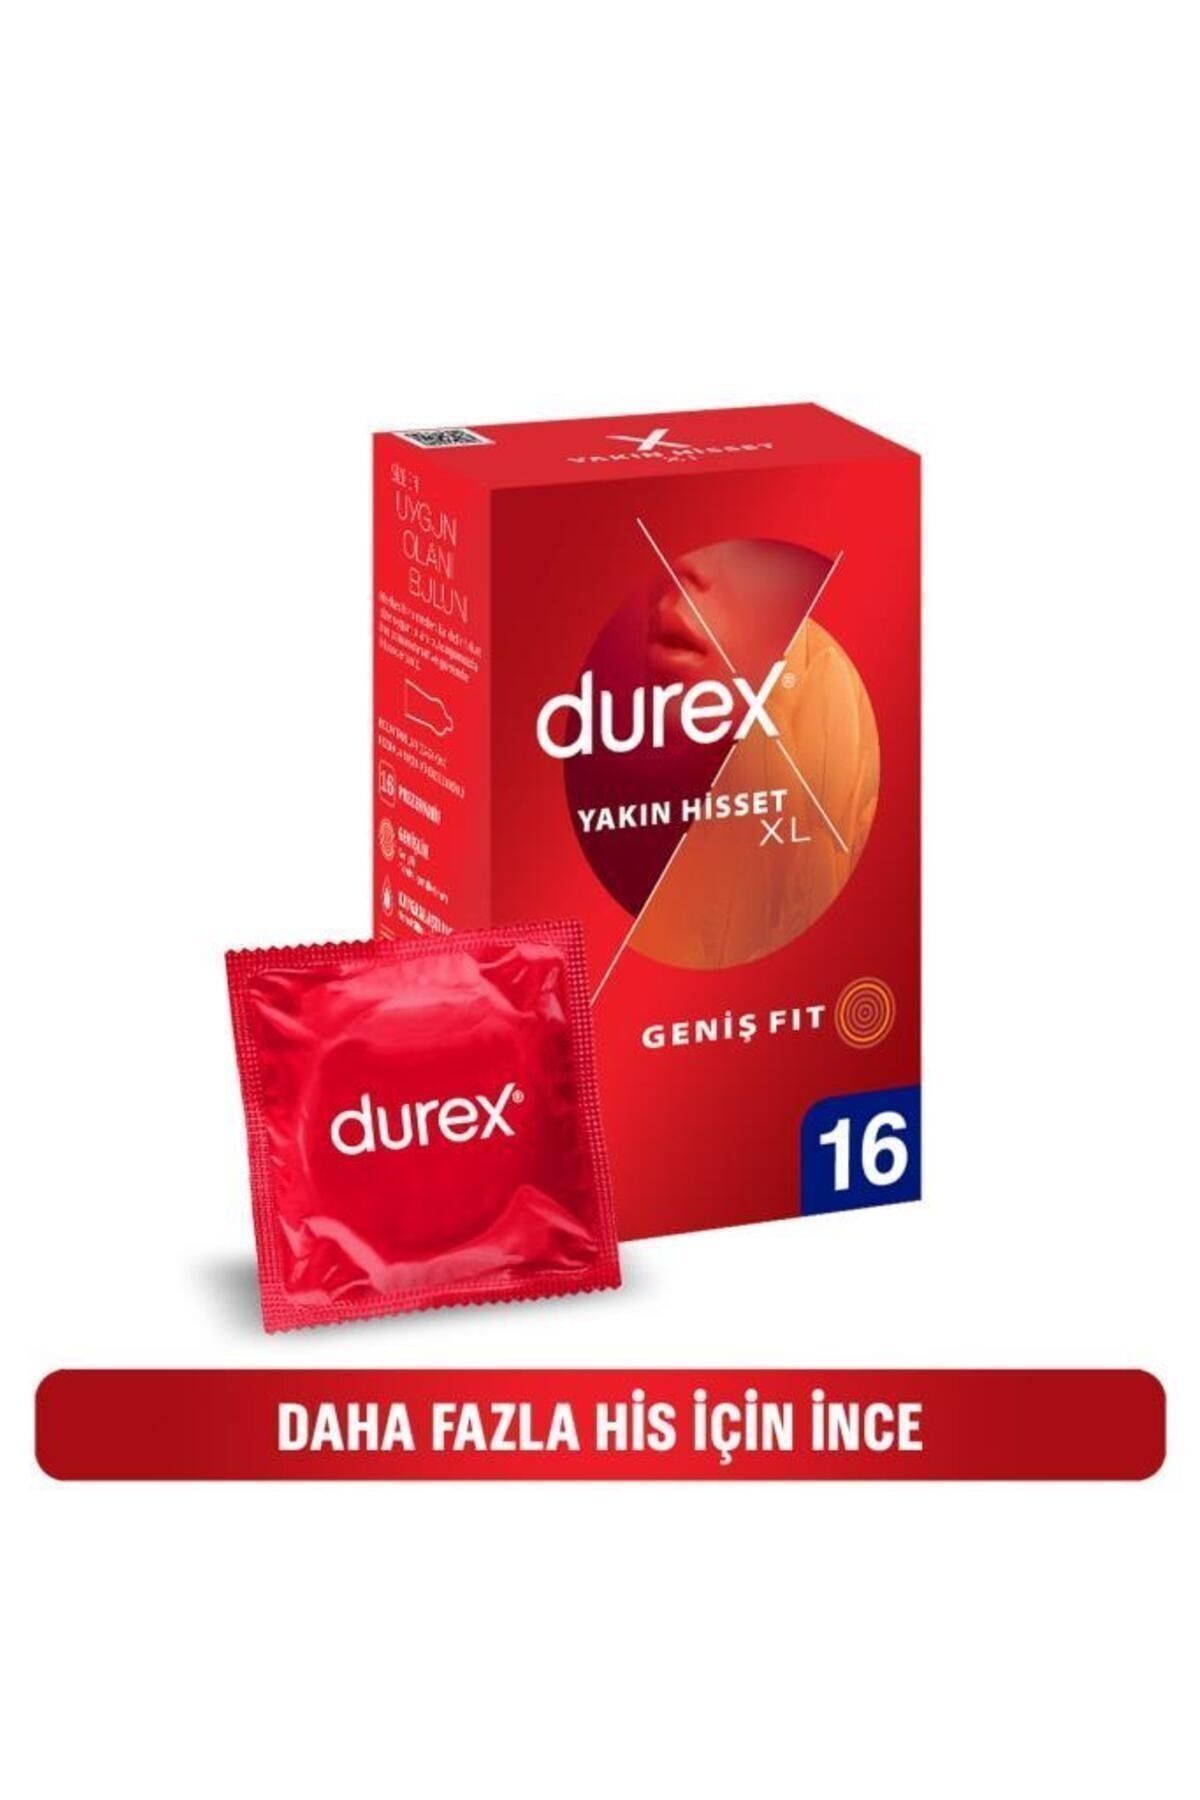 Durex Yakın Hisset XL İnce Prezervatif 16'lı, Geniş Fit